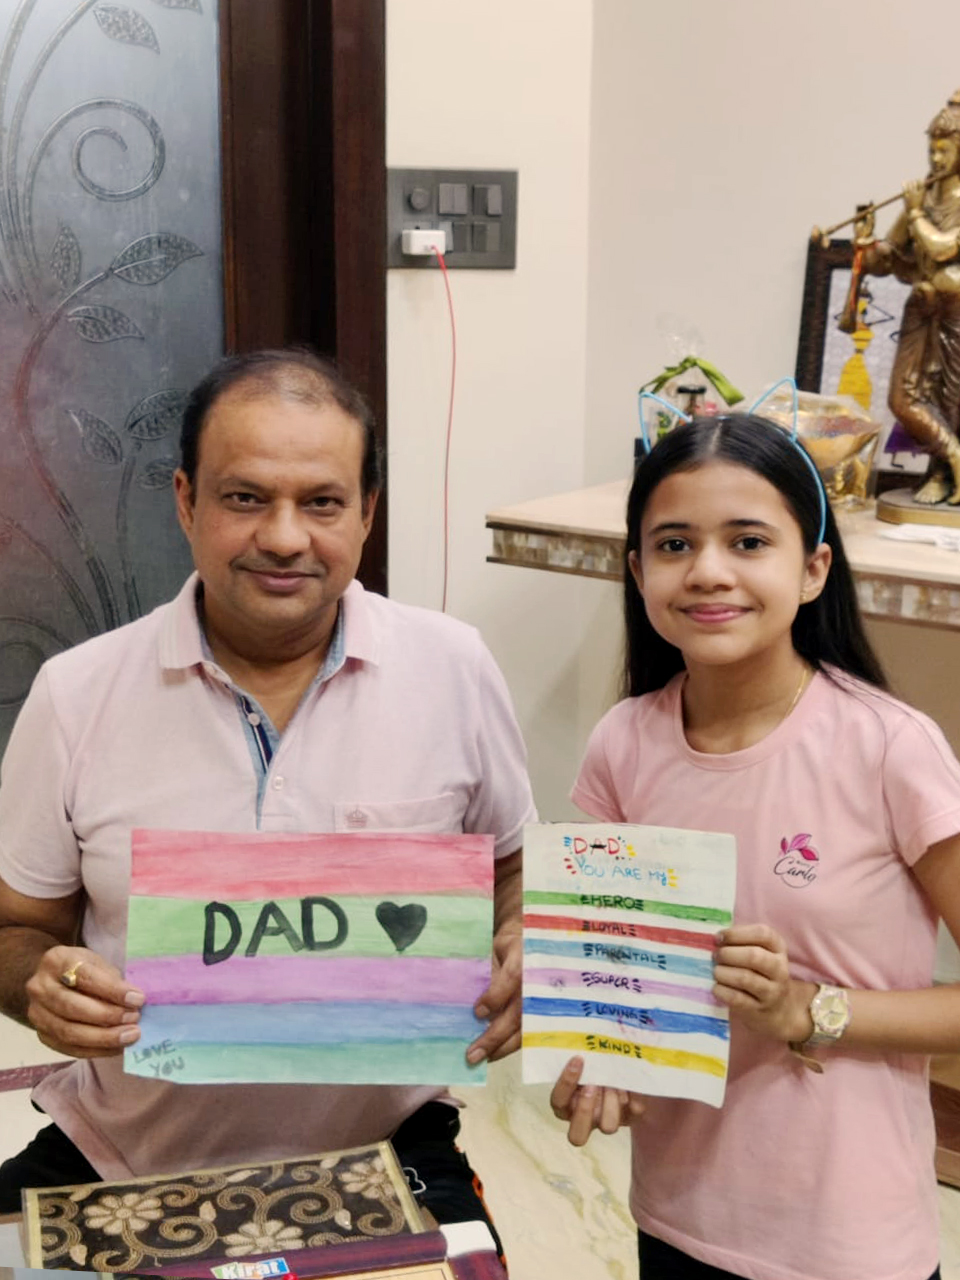 Presidium Rajnagar, FATHER’S DAY - CELEBRATING FATHERHOOD AND PARENTAL BOND